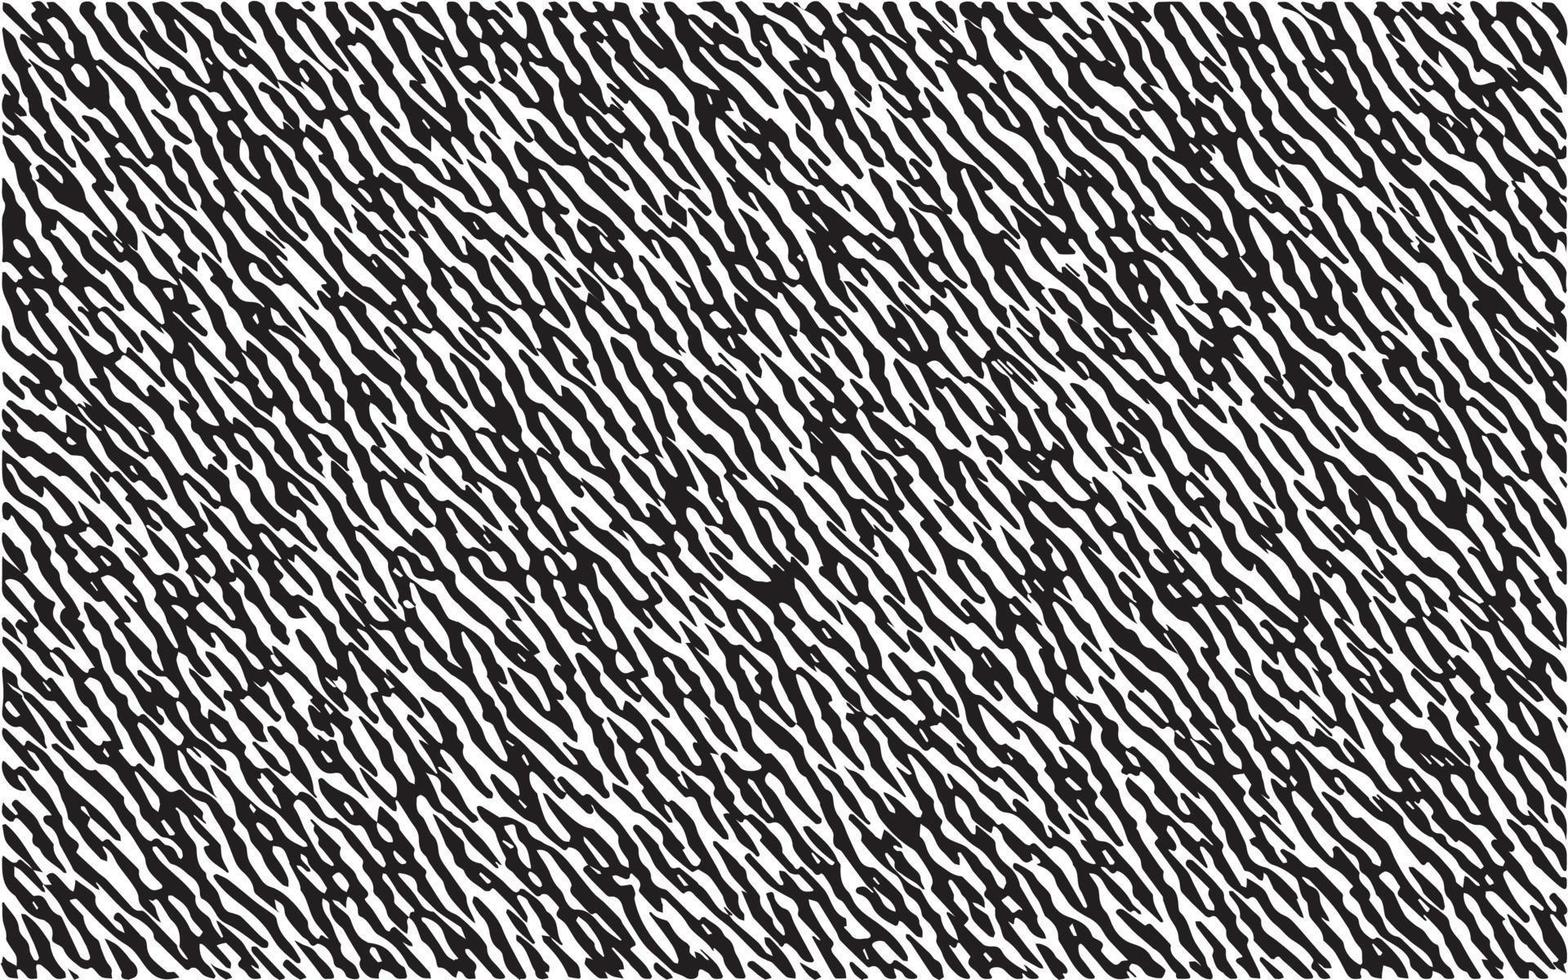 design de padrão de textura de zebra preto e branco. padrão listrado de fundo de ilustração vetorial de peles de animais. linhas curvas pretas com textura áspera isoladas em branco vetor